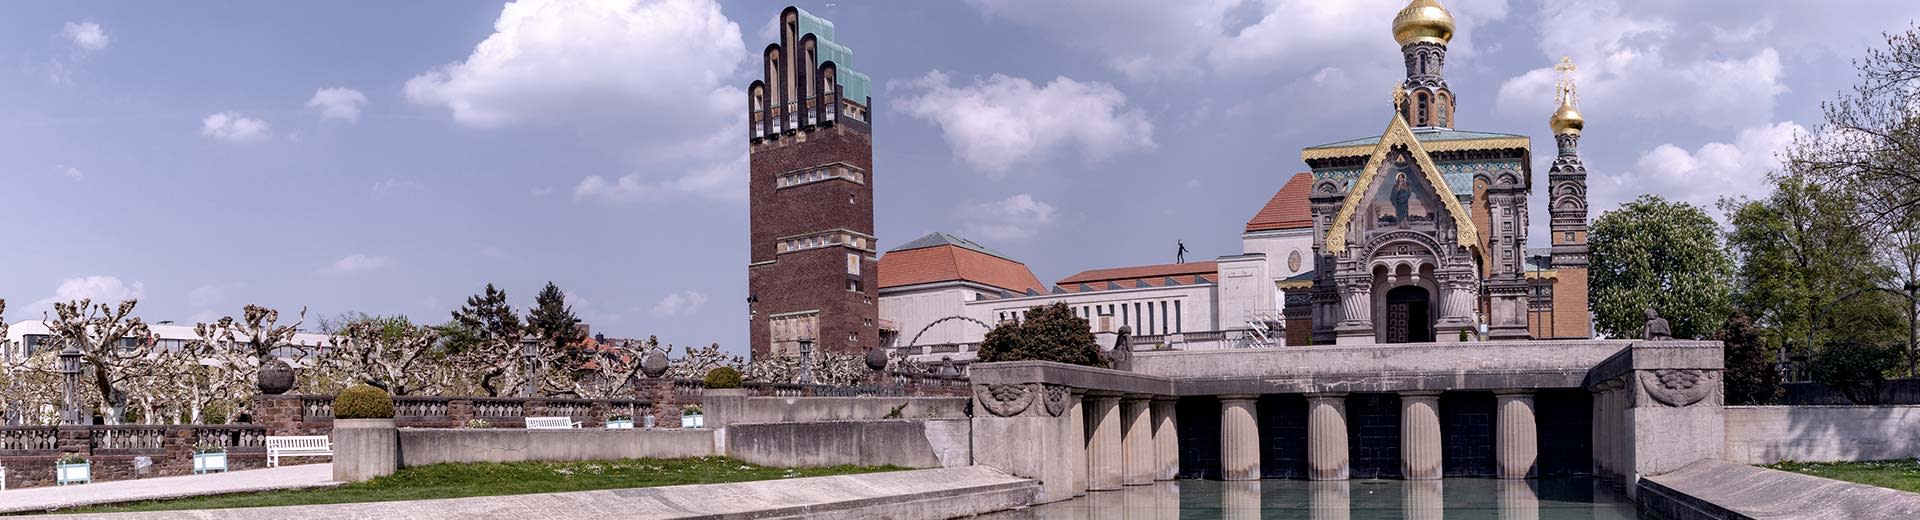 Les églises et les bâtiments historiques de Darmstadt s'assoient à côté d'un canal par une journée claire et ensoleillée.